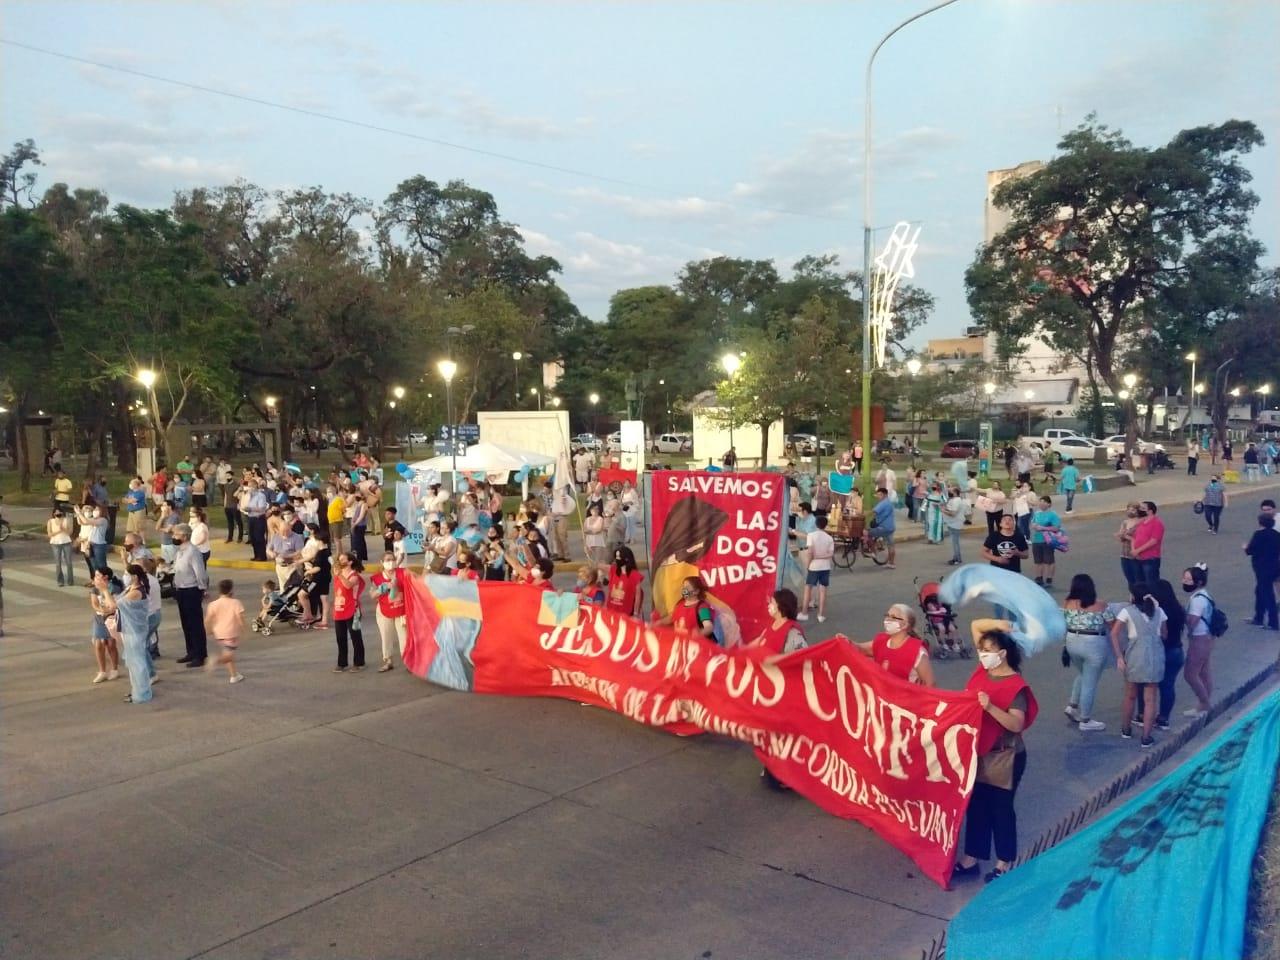 Un día antes del debate, tucumanos provida marcharon al Monumento del Bicentenario